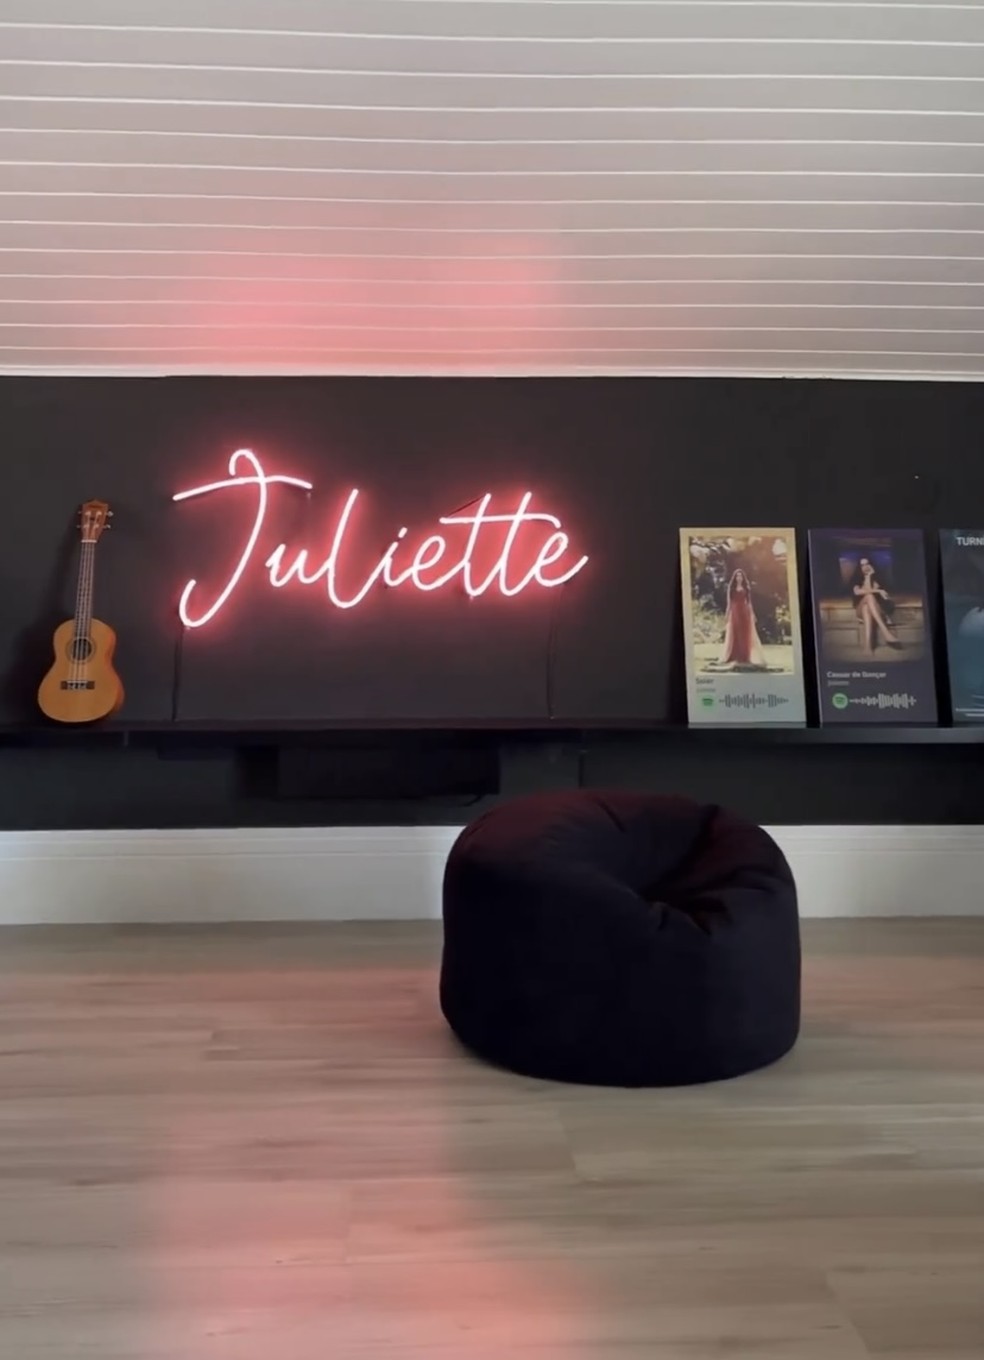 Este espaço é onde Juliette realiza suas produções musicais e ensaios  — Foto: Israel Gollino